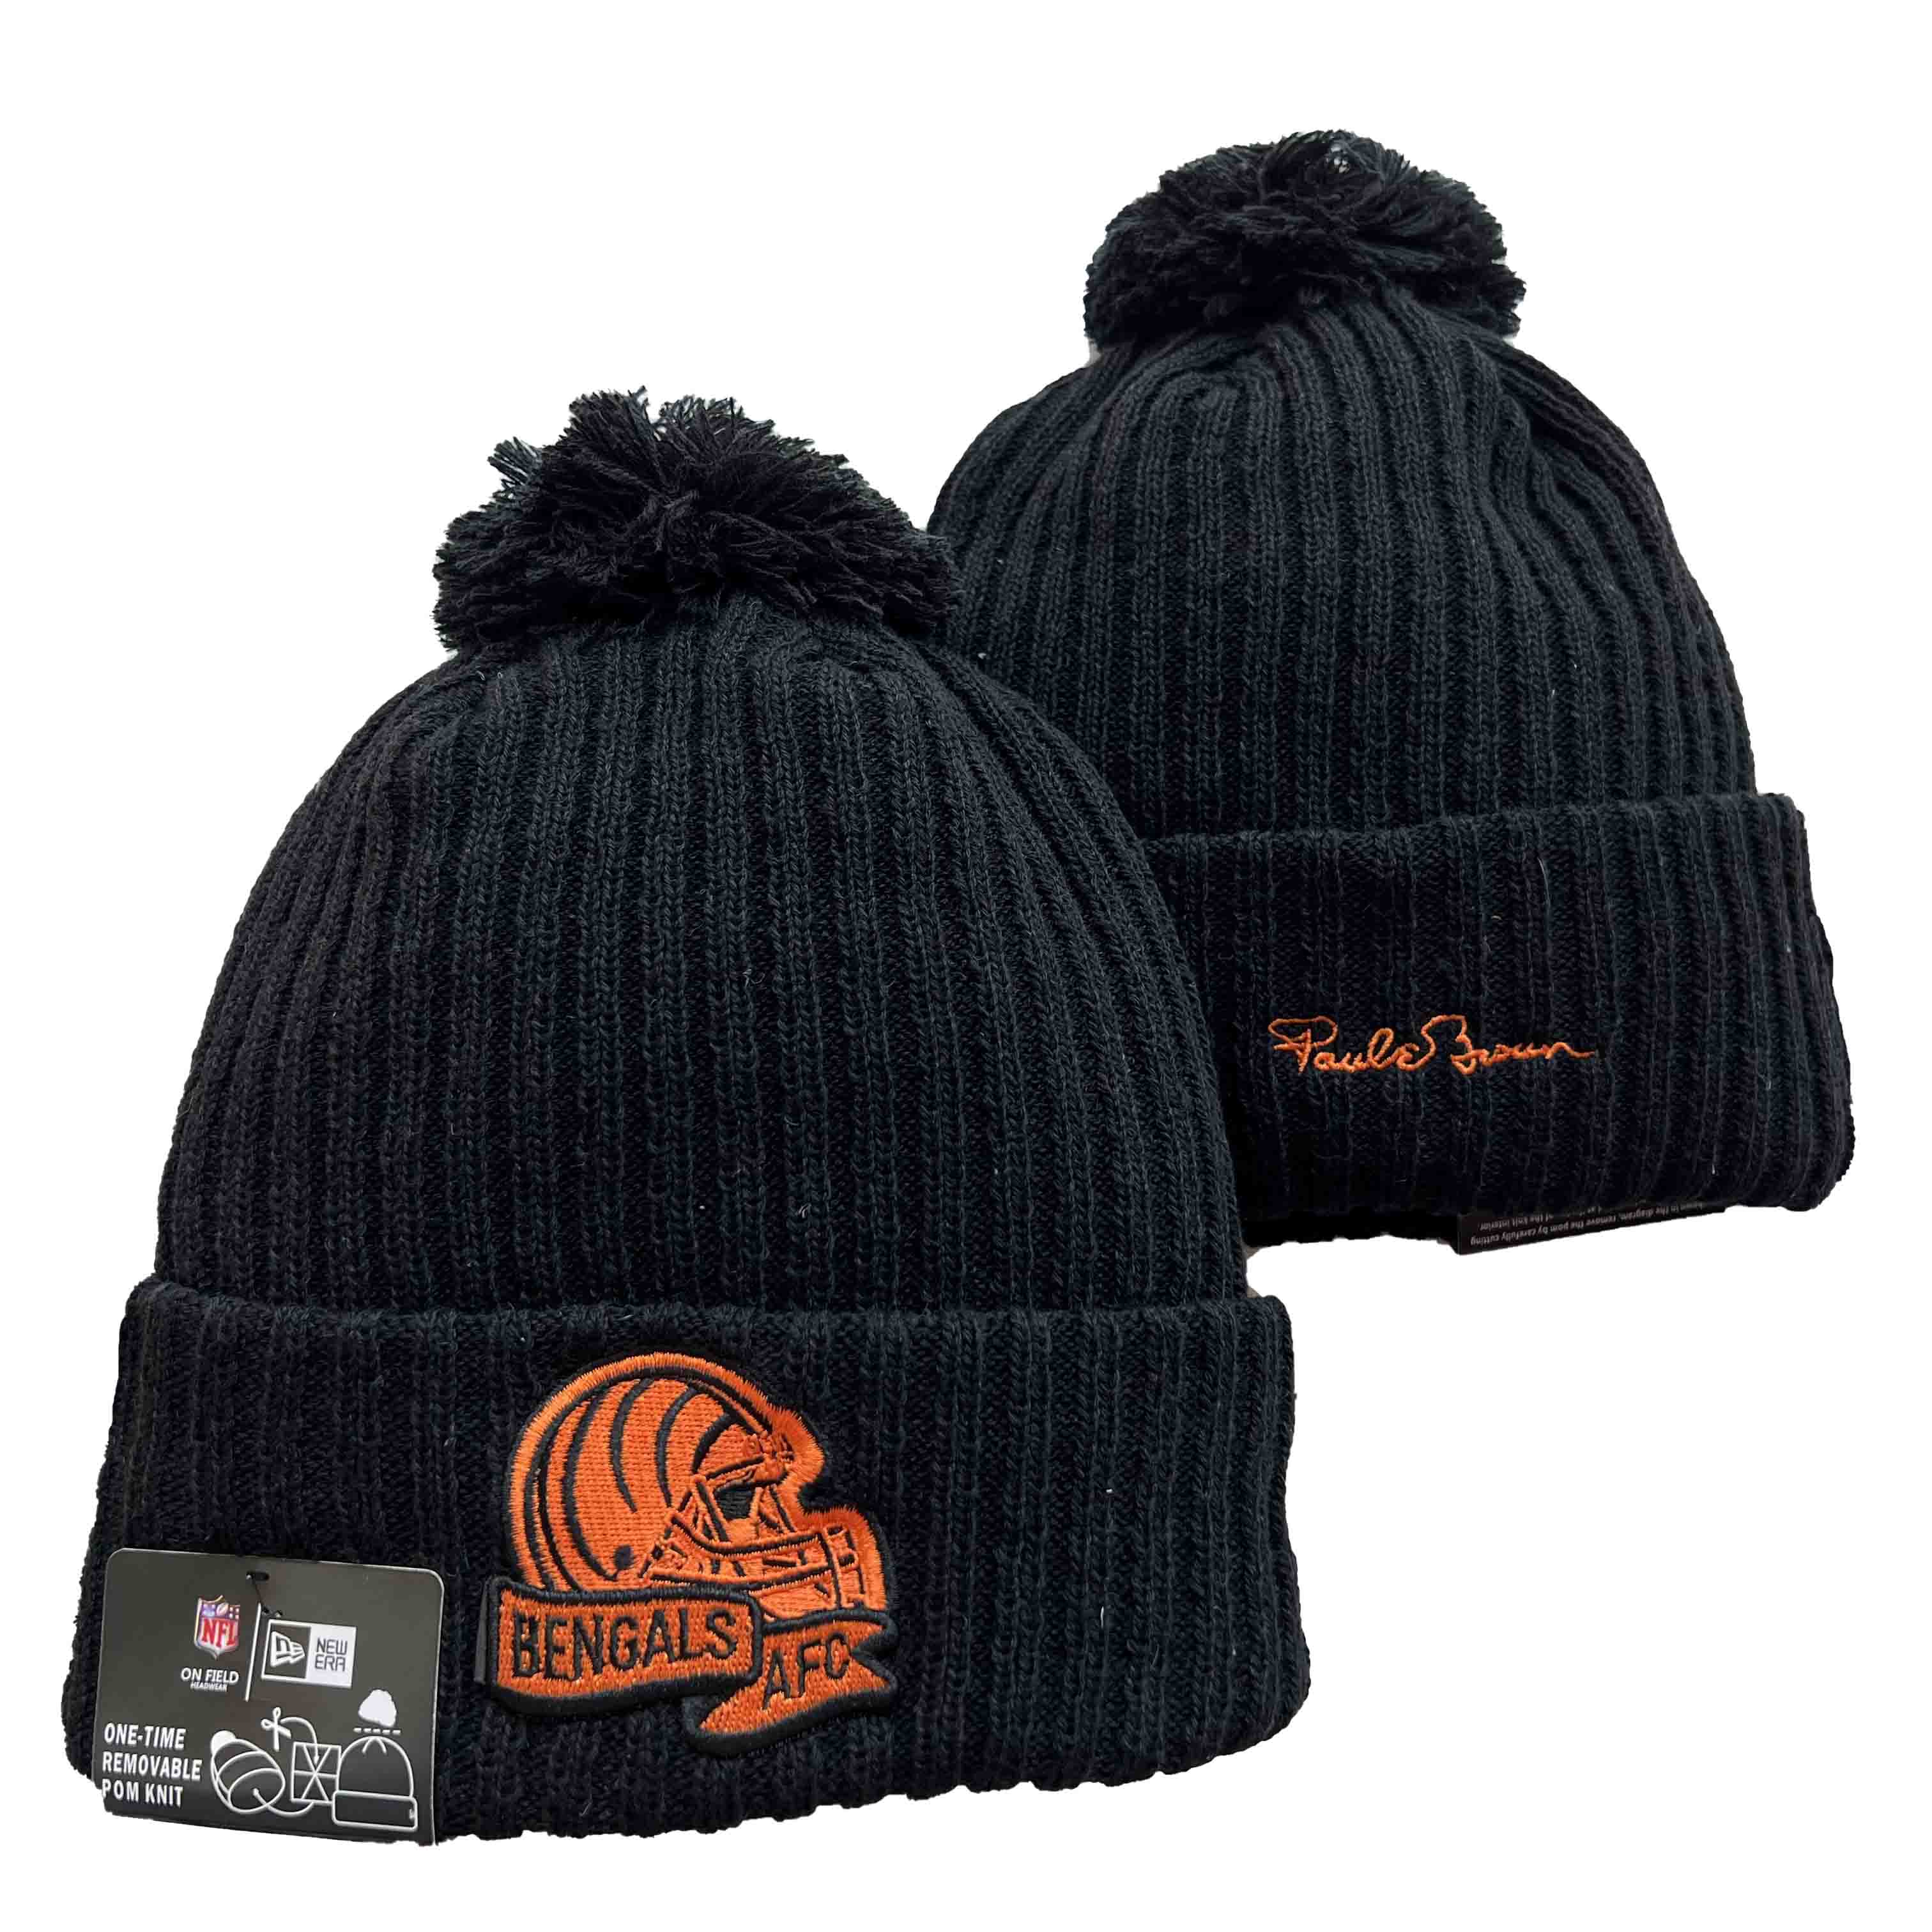 Cincinnati Bengals Knit Hats -4